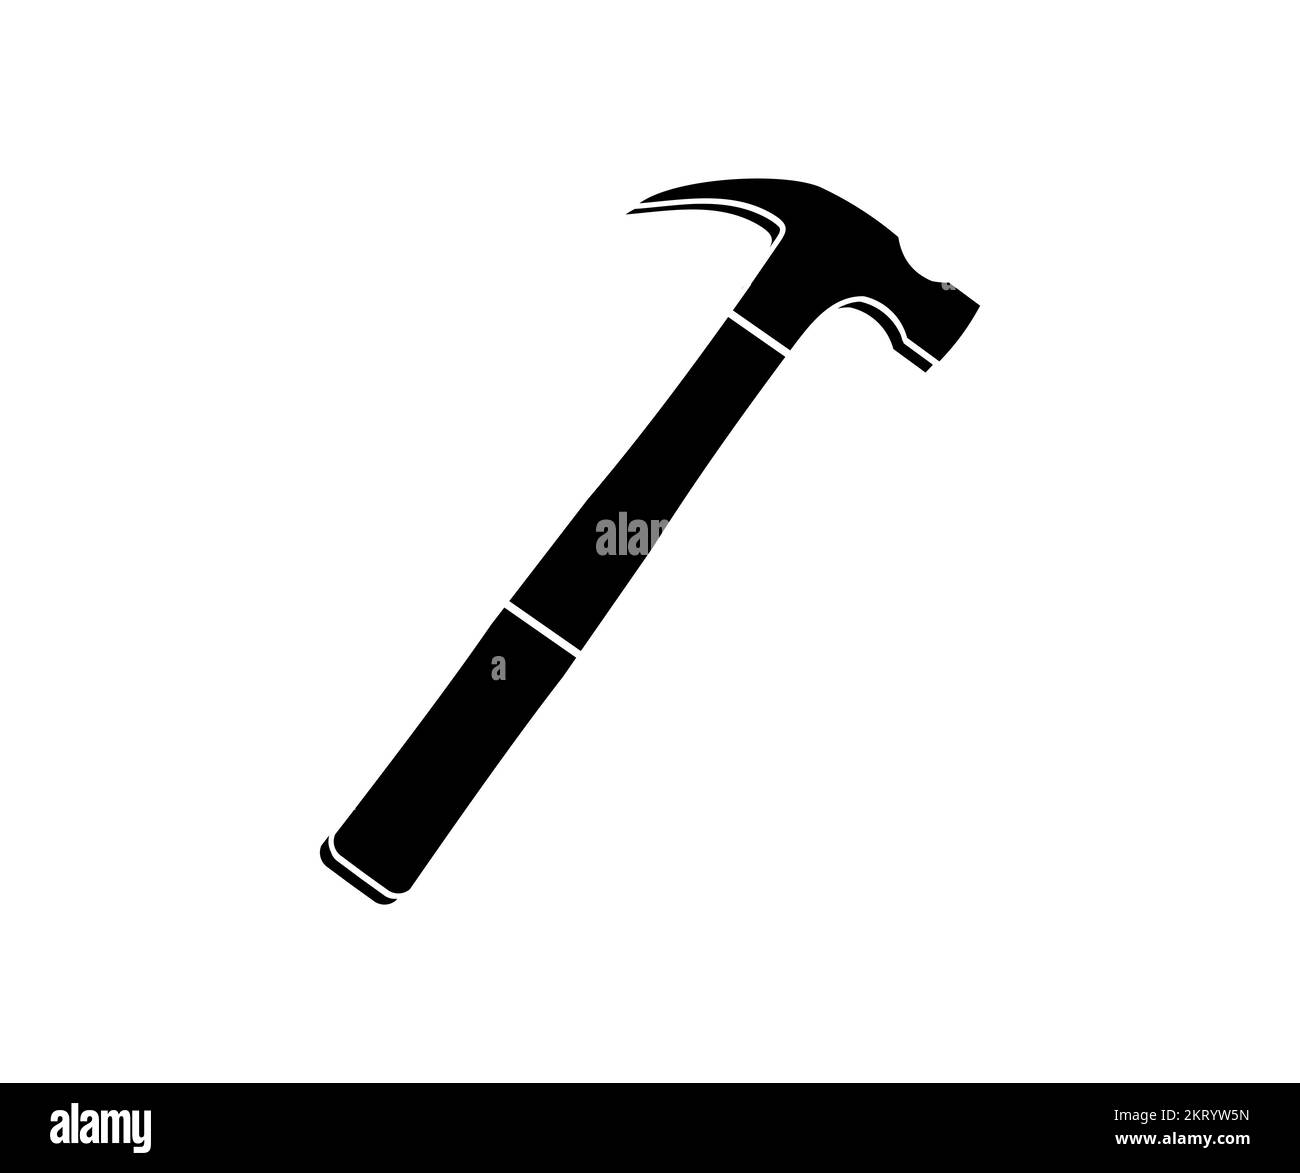 Icône marteau. Illustration simple de la conception du logo du marteau de la maison. Dessin vectoriel et illustration de l'outil pour marteau de menuisier. Illustration de Vecteur